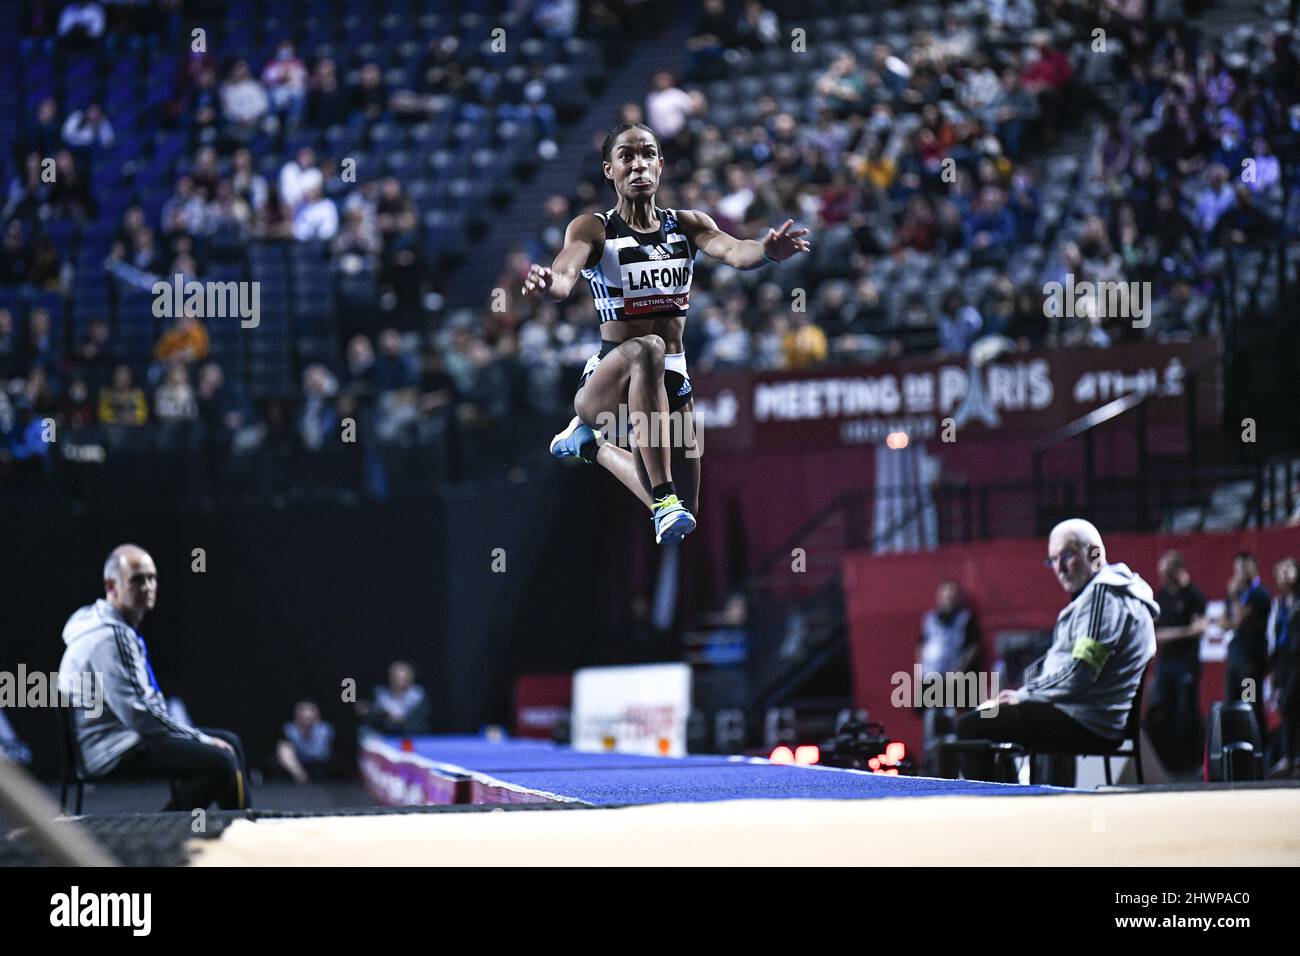 Thea Lafond von Dominica (Triple Jump der Frauen) tritt während der Leichtathletik-Hallenwelttour, Meeting de Paris 2022 am 6. März 2022 in der Accor Arena in Paris, Frankreich, an - Foto: Victor Joly/DPPI/LiveMedia Stockfoto